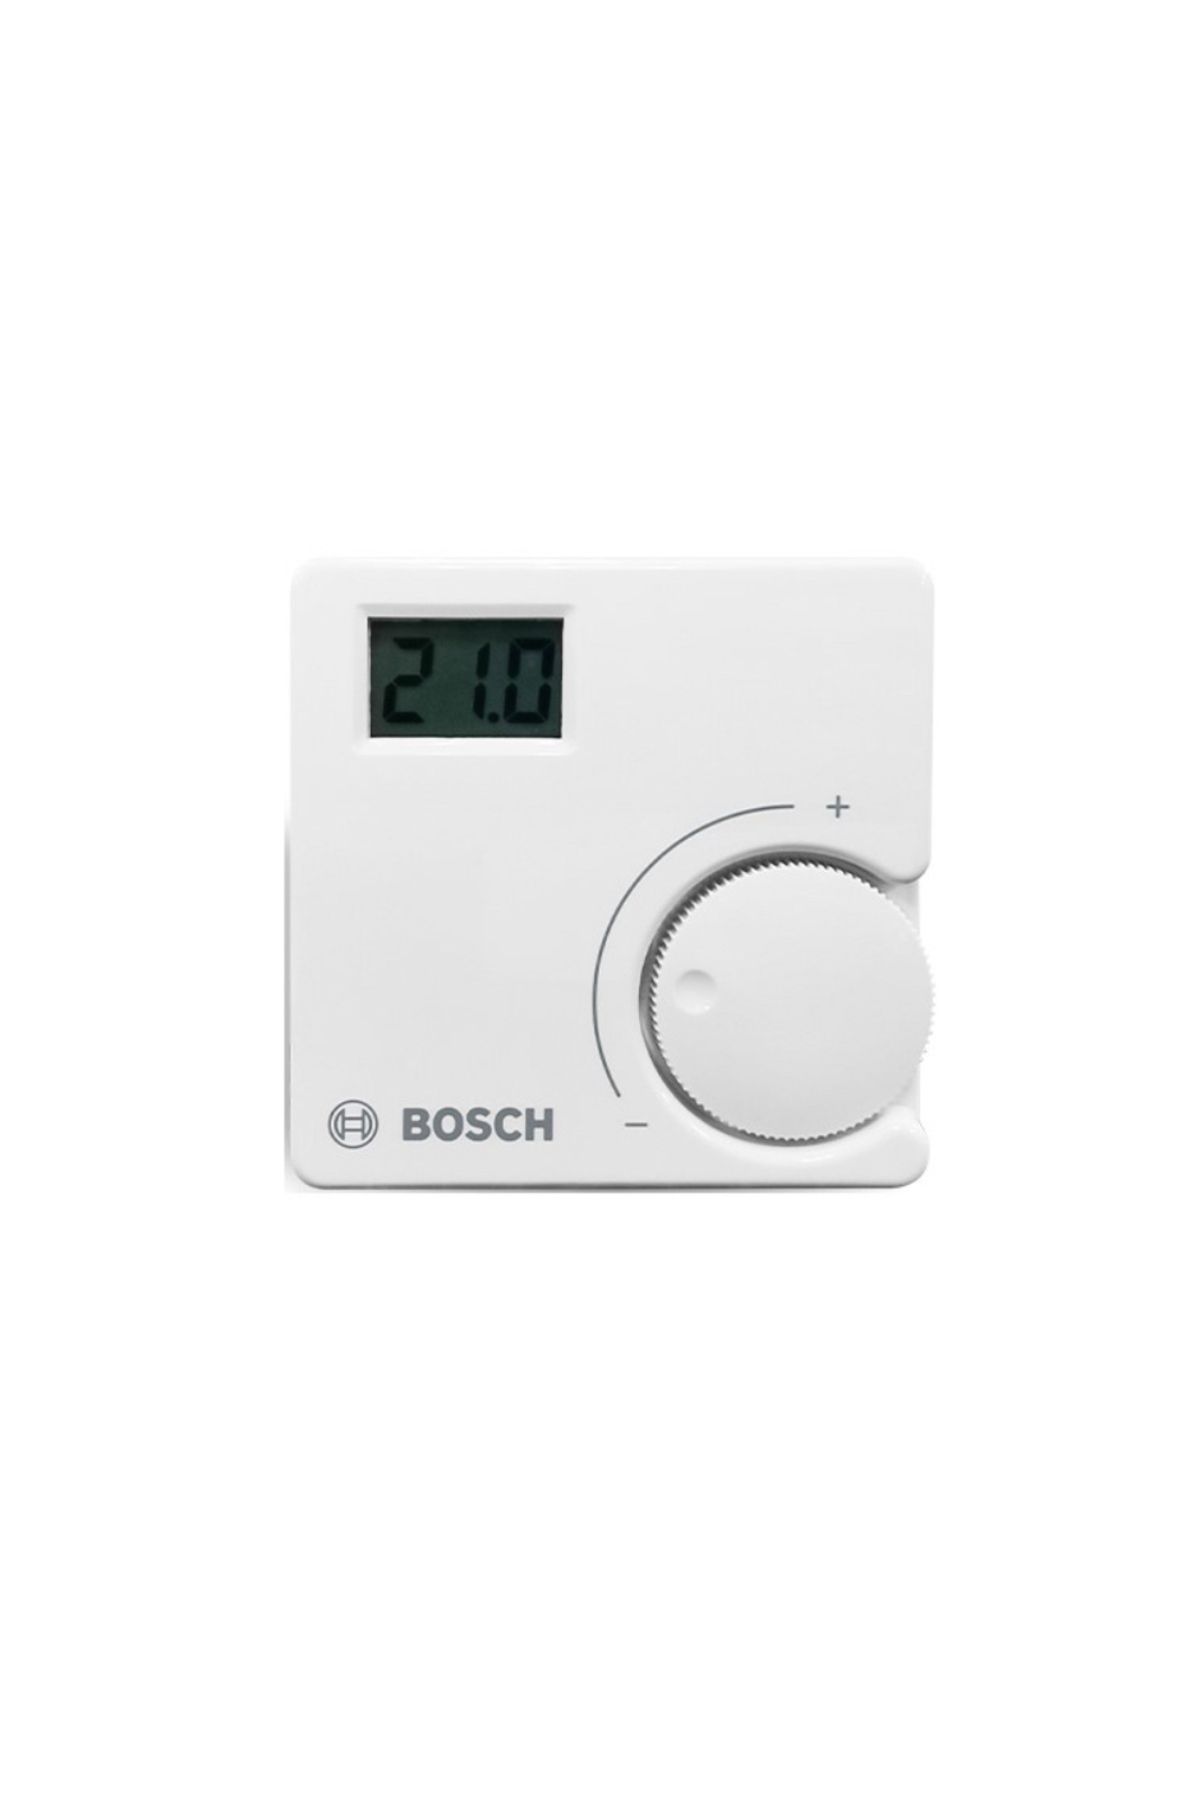 Bosch kablosuz oda termostadı on-off